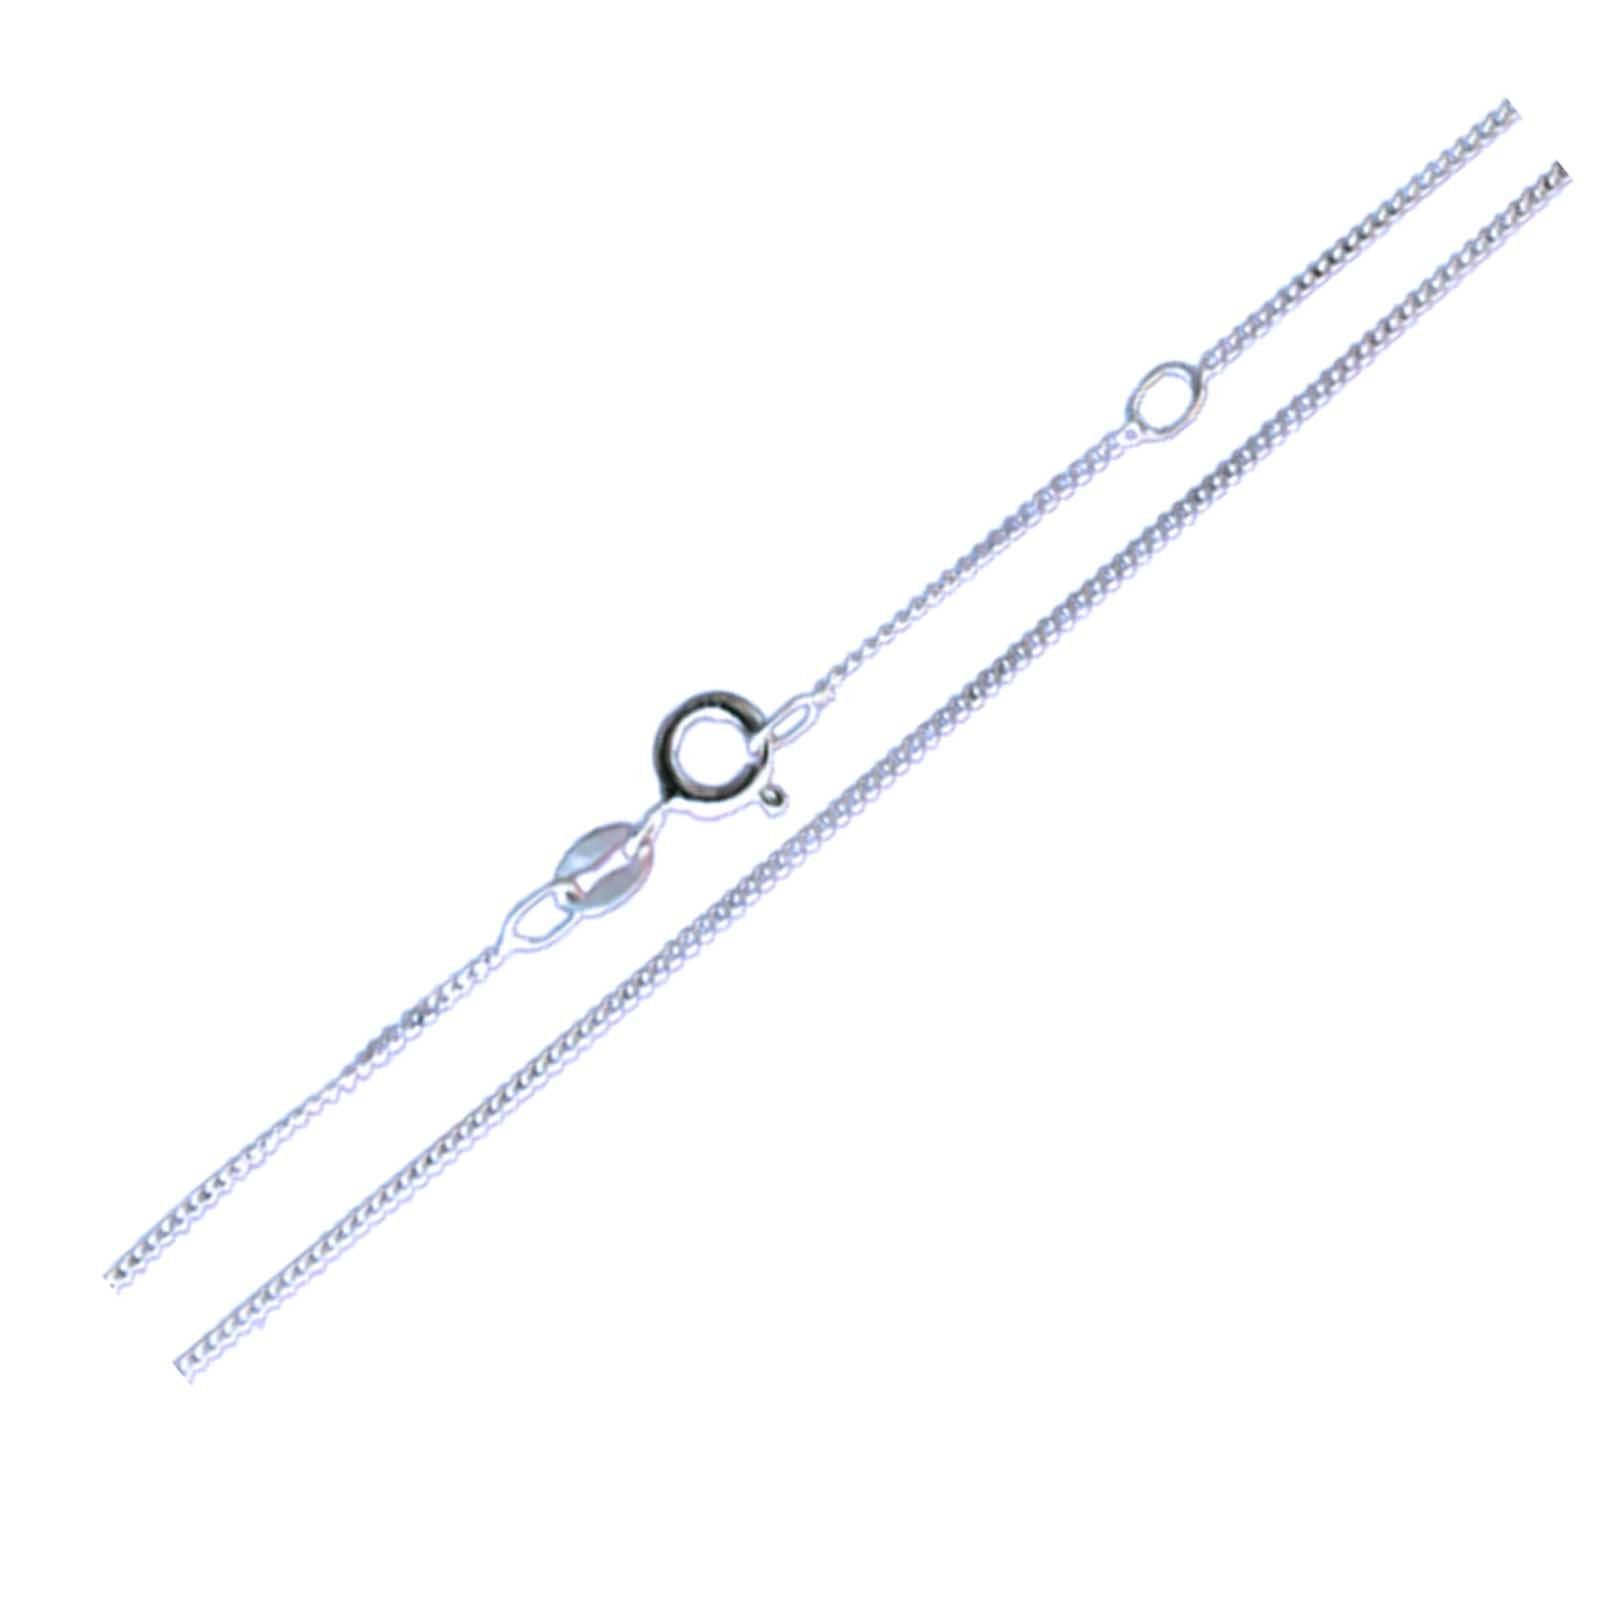 schmuck23 Kettenanhänger (Halskette mit Anhänger), Halskette Kettenanhänger Silberanhänger Kinderschmuck